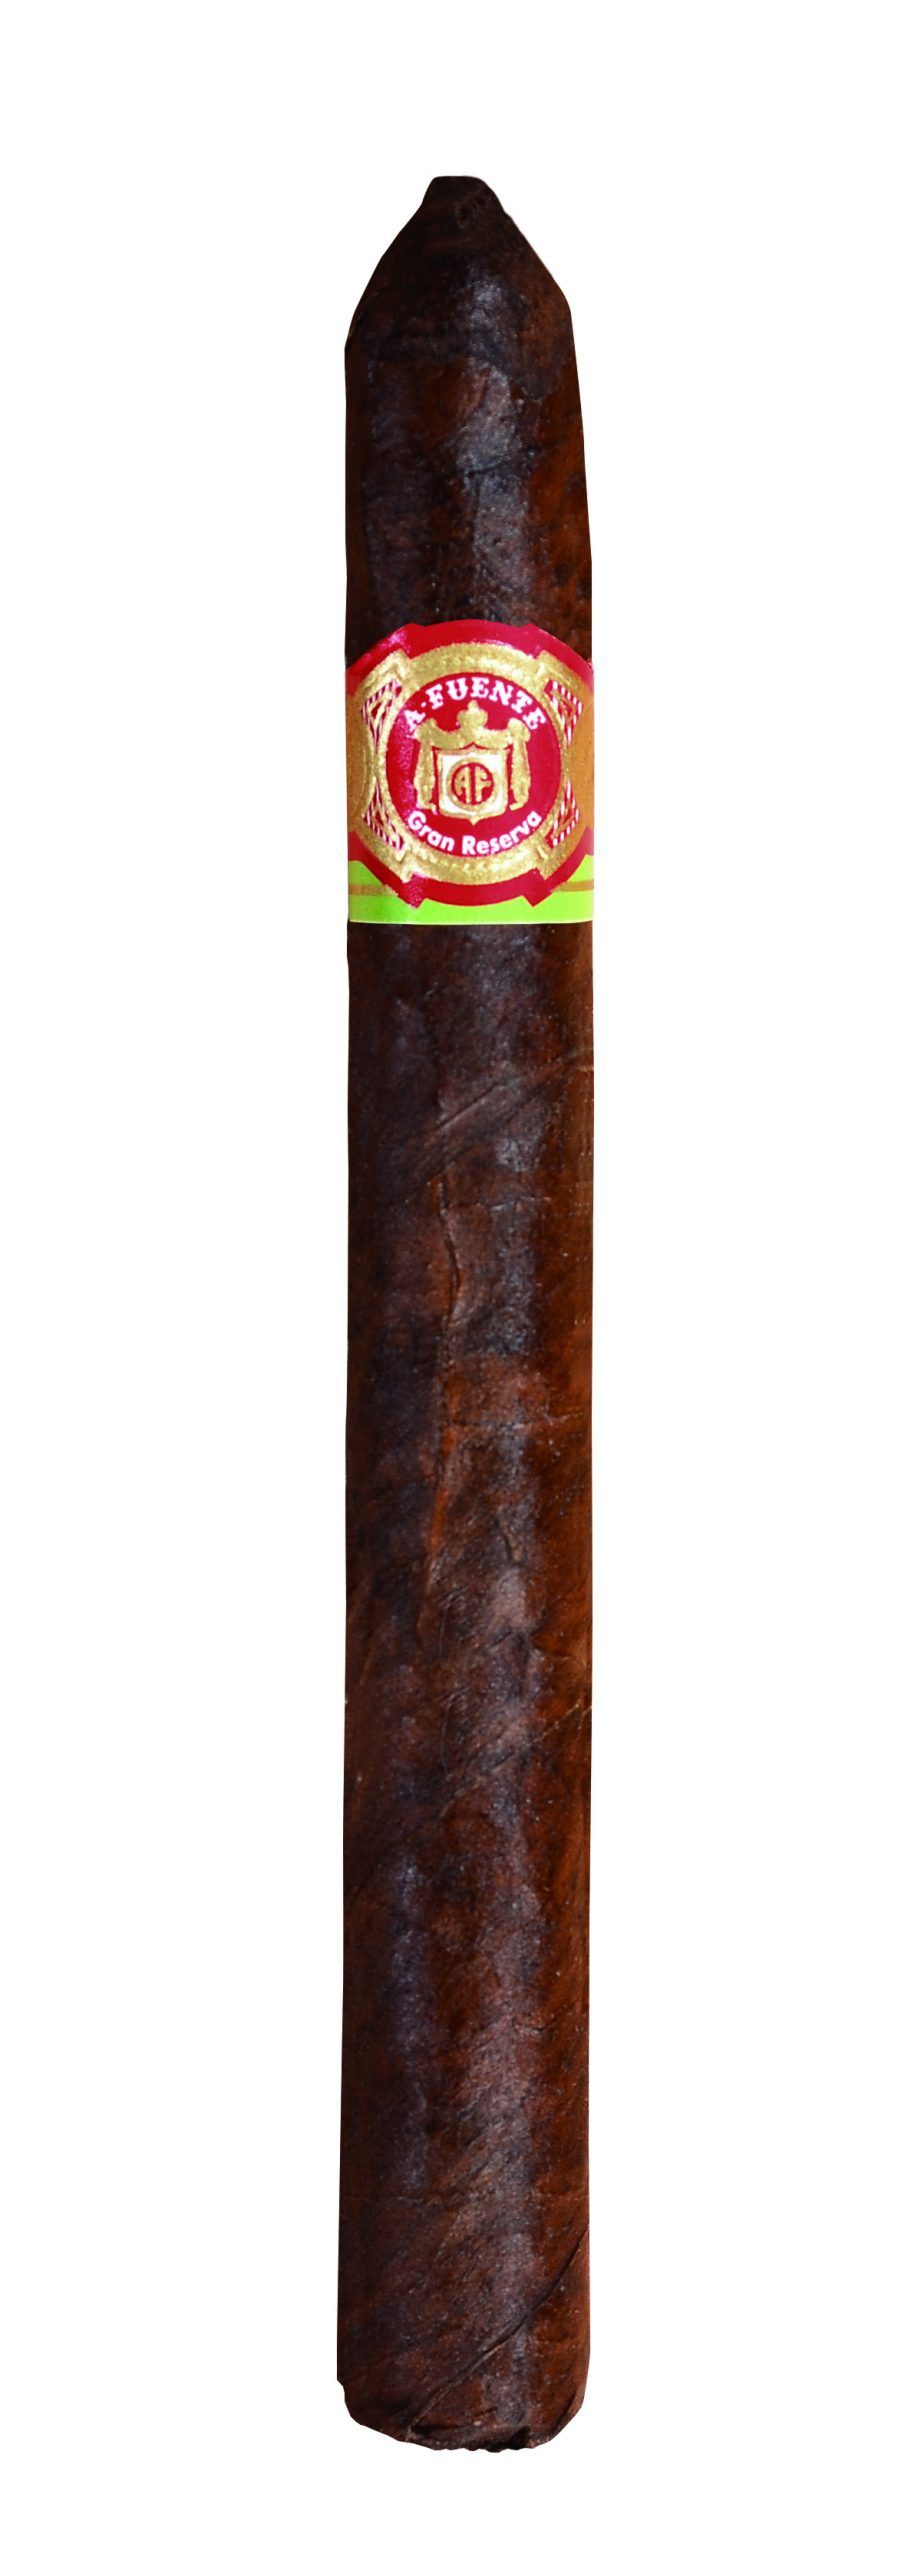 Single Arturo Fuente Gran Reserva Exquisitos Maduro cigar